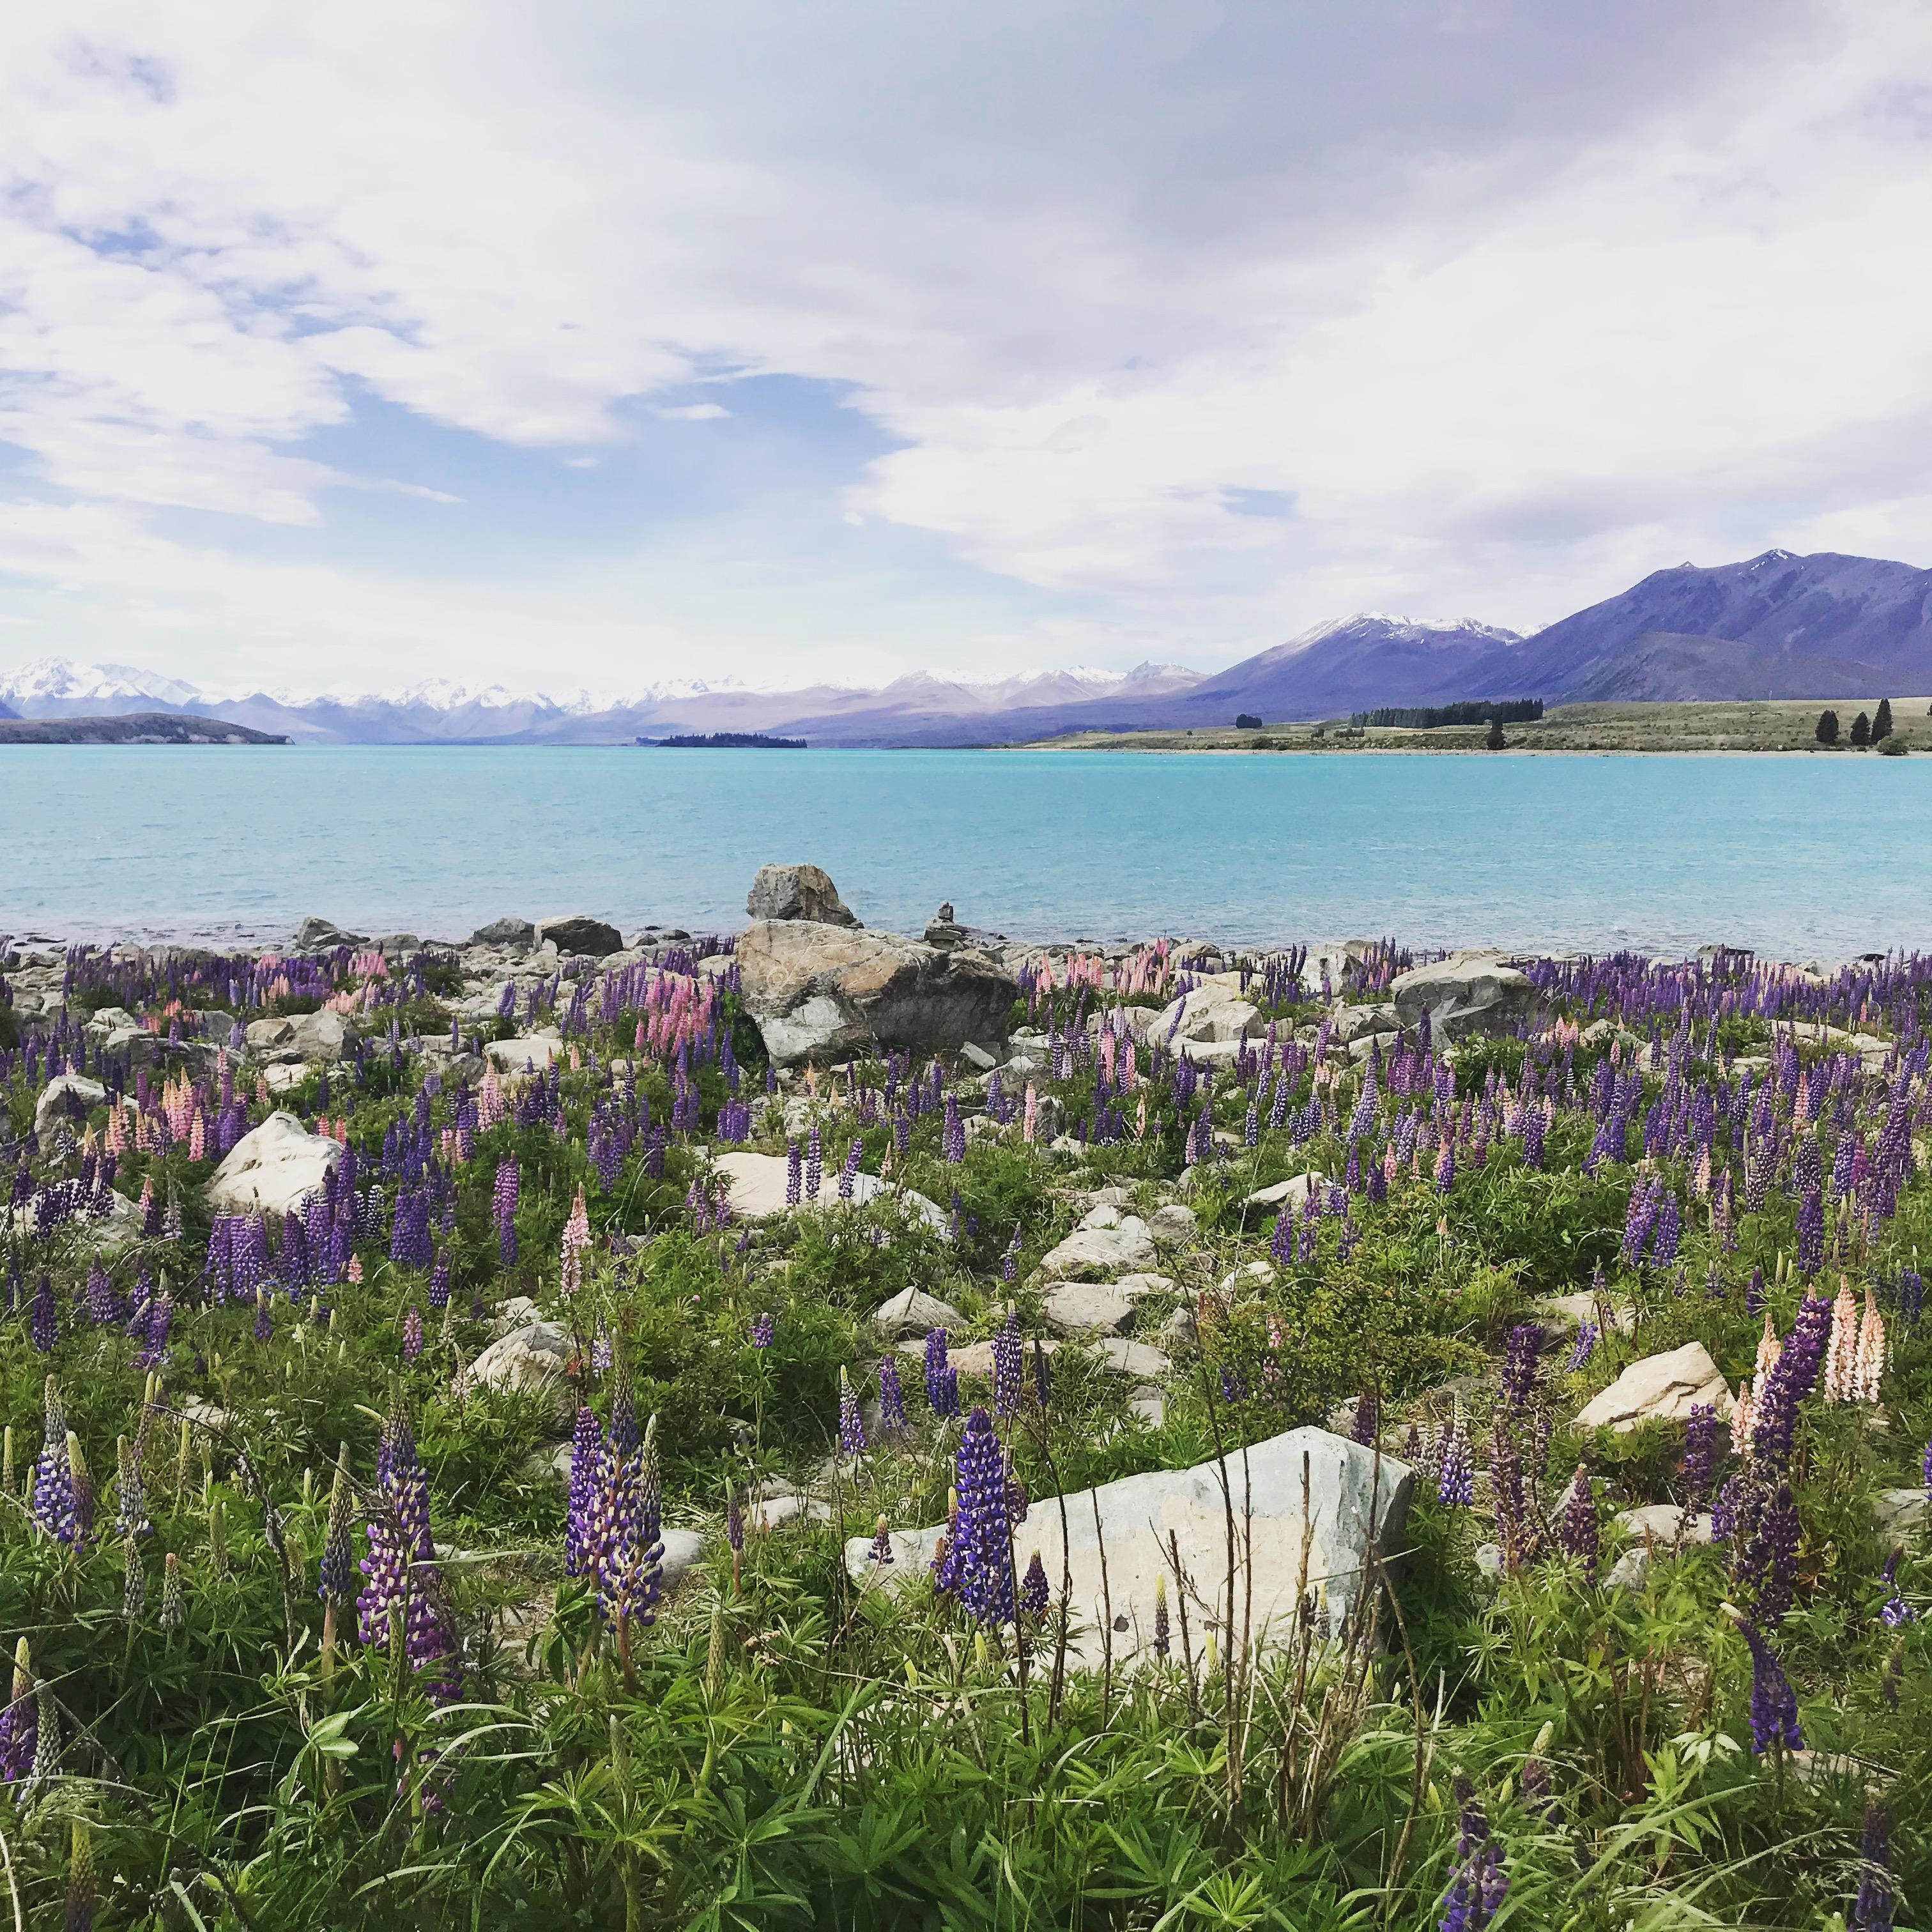 #meinschönsterUrlaub letztes Jahr in #Neuseeland #travelchellange diese #Natur und #Farben einfach toll. #Fernweh